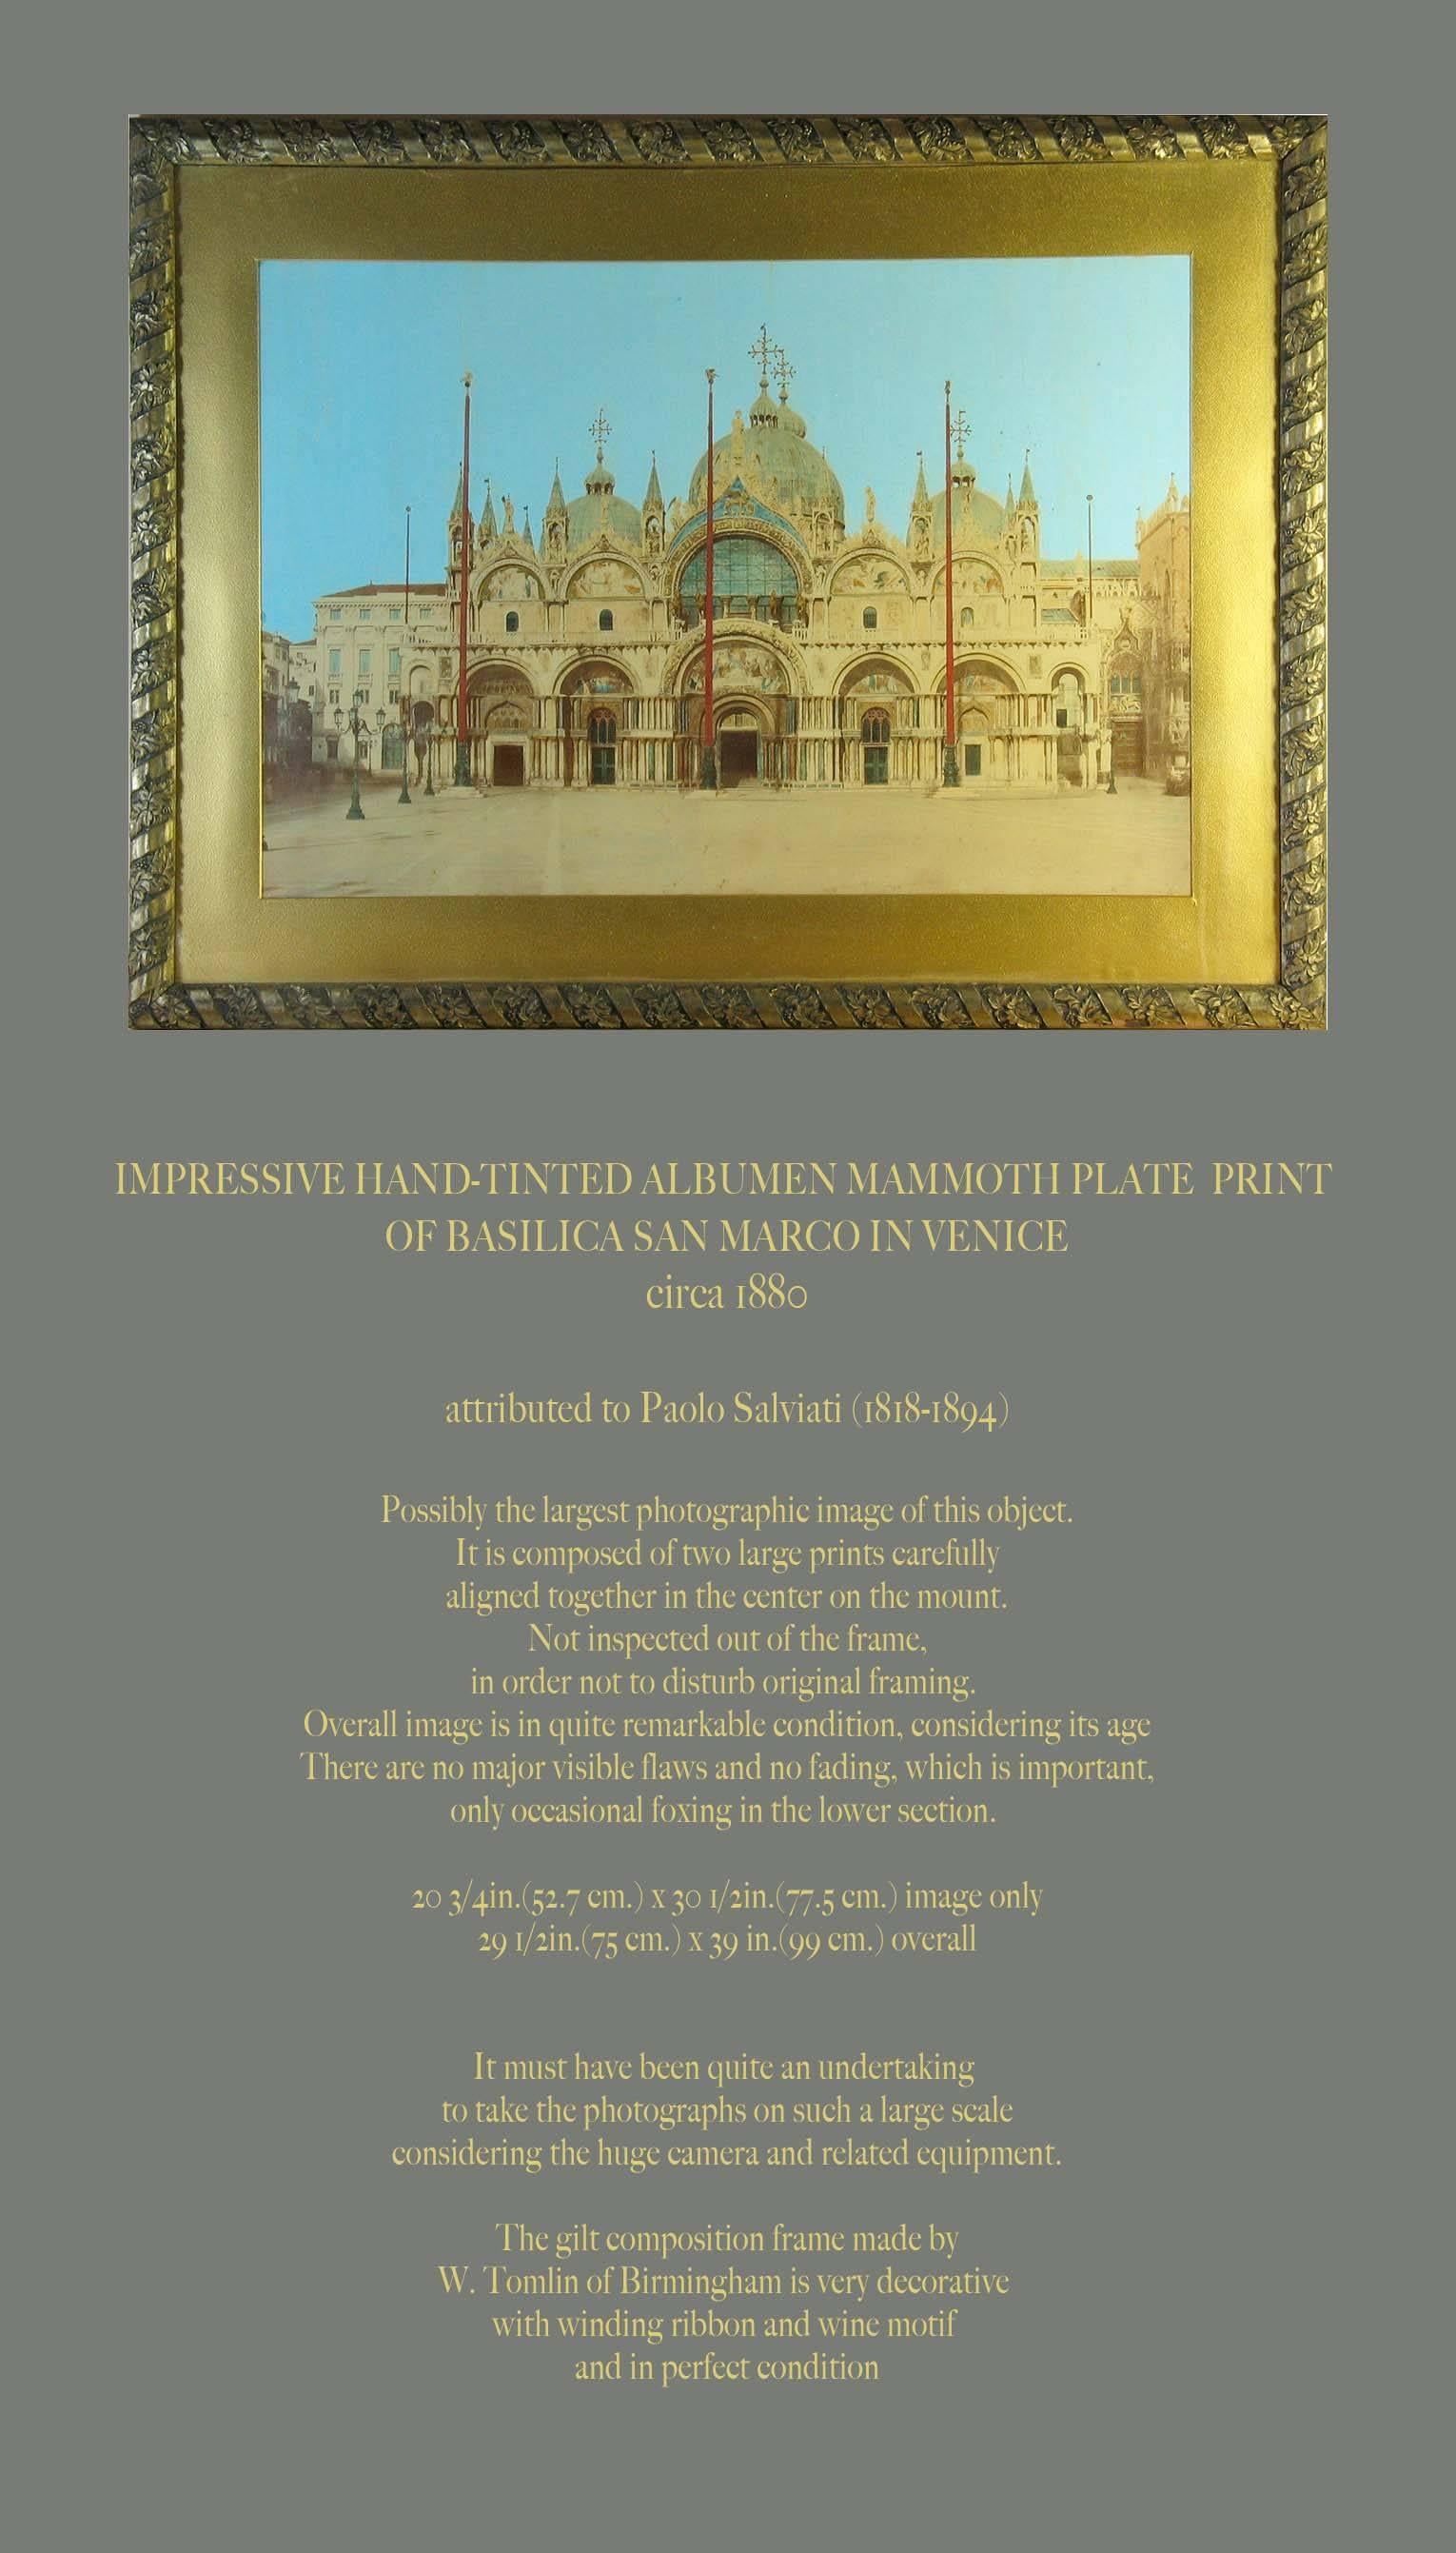 Impressionnante plaque de mammouth à l'albumine teintée à la main représentant la basilique Saint-Marc à Venise,
vers 1880. Attribué à Paolo Salviati (1818-1894).

Probablement la plus grande image photographique de cet objet. Elle est composée